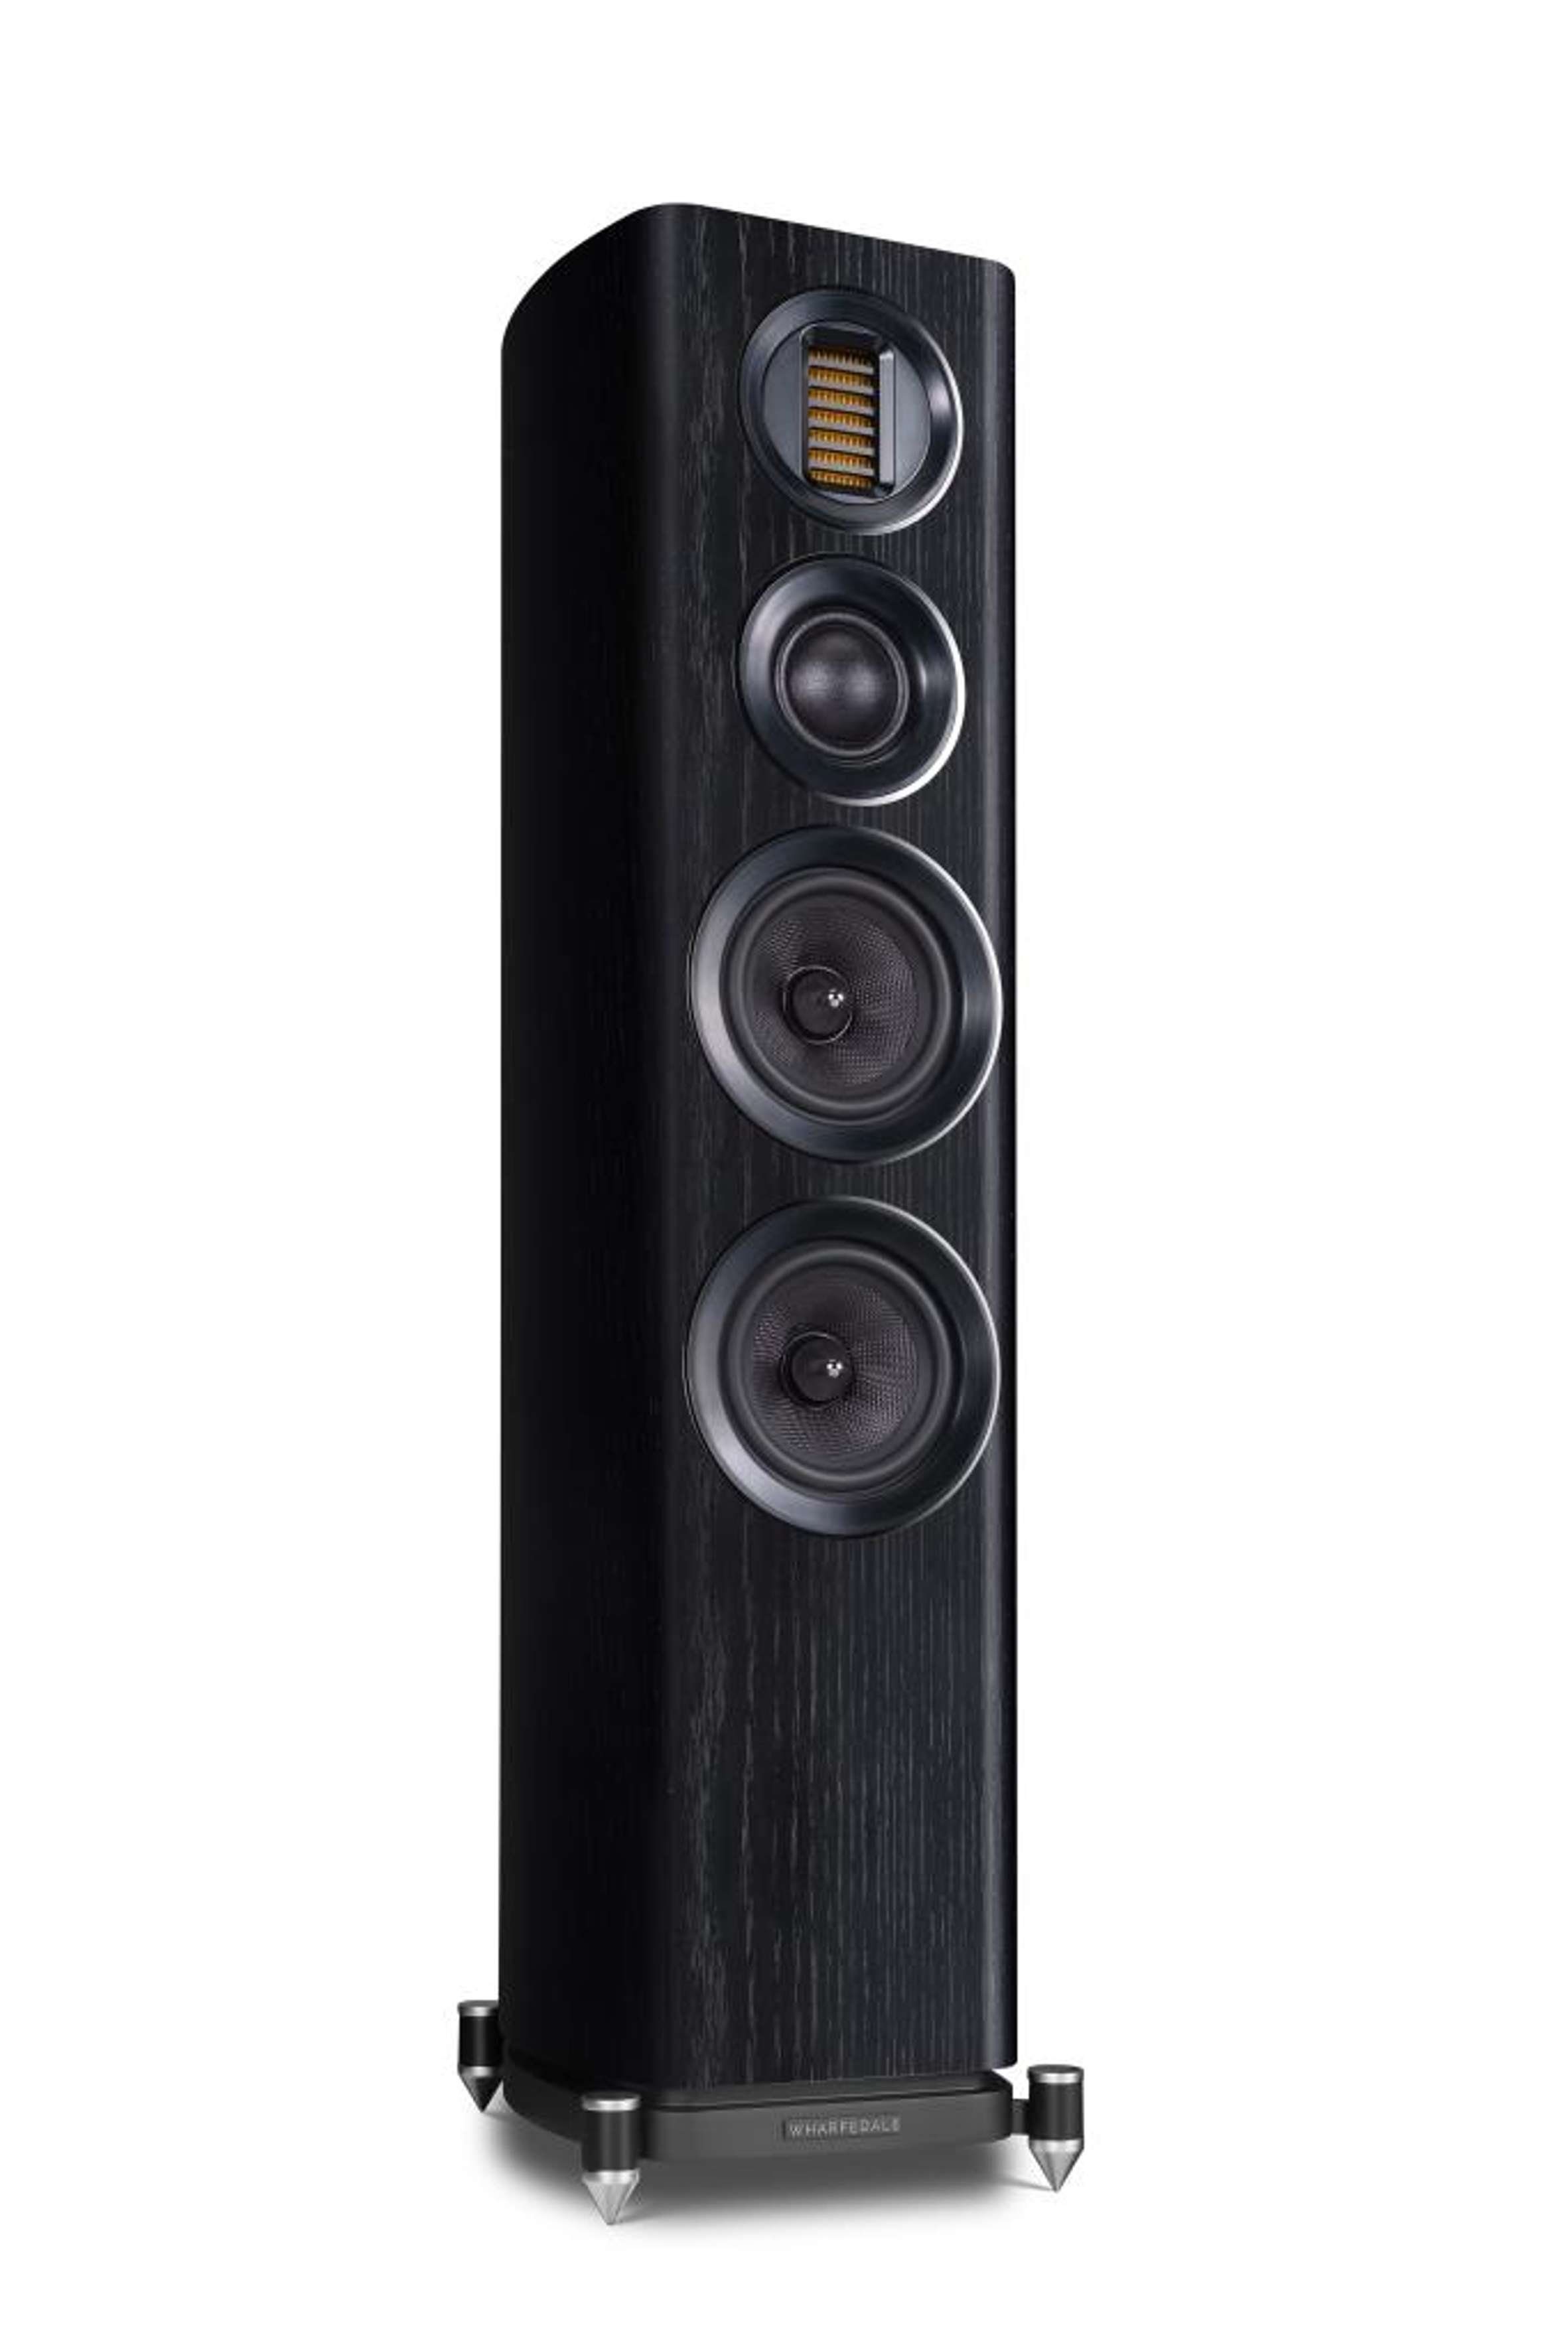 WHARFEDALE   EVO 4.3 Stand-Lautsprecher (wandnahe Aufstellung Sockel) durch Bassreflex im schwarz möglich